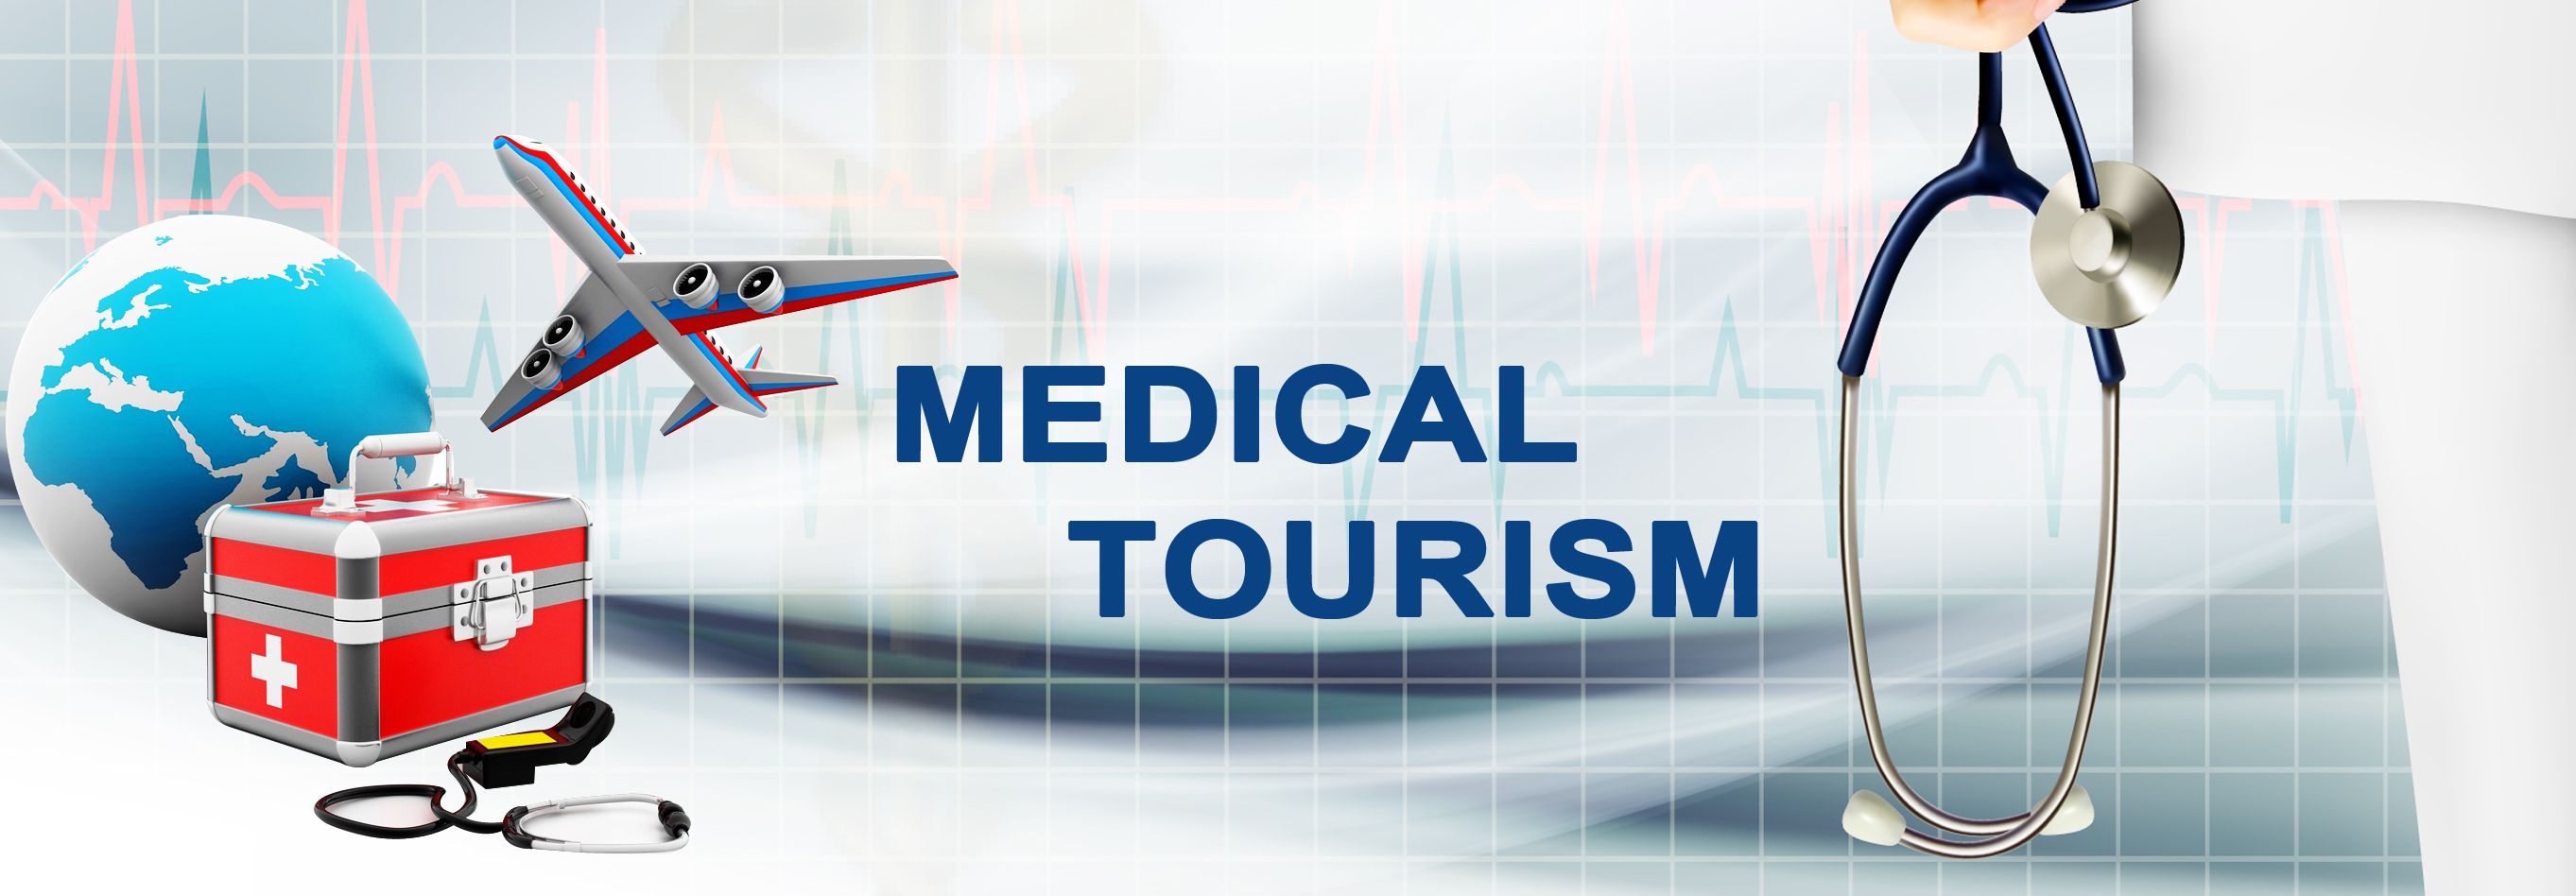 Medical tourism. Медицинский туризм. Медицинский туризм картинки. Экспорт медицинских услуг. Медицинский туризм турфирмы.